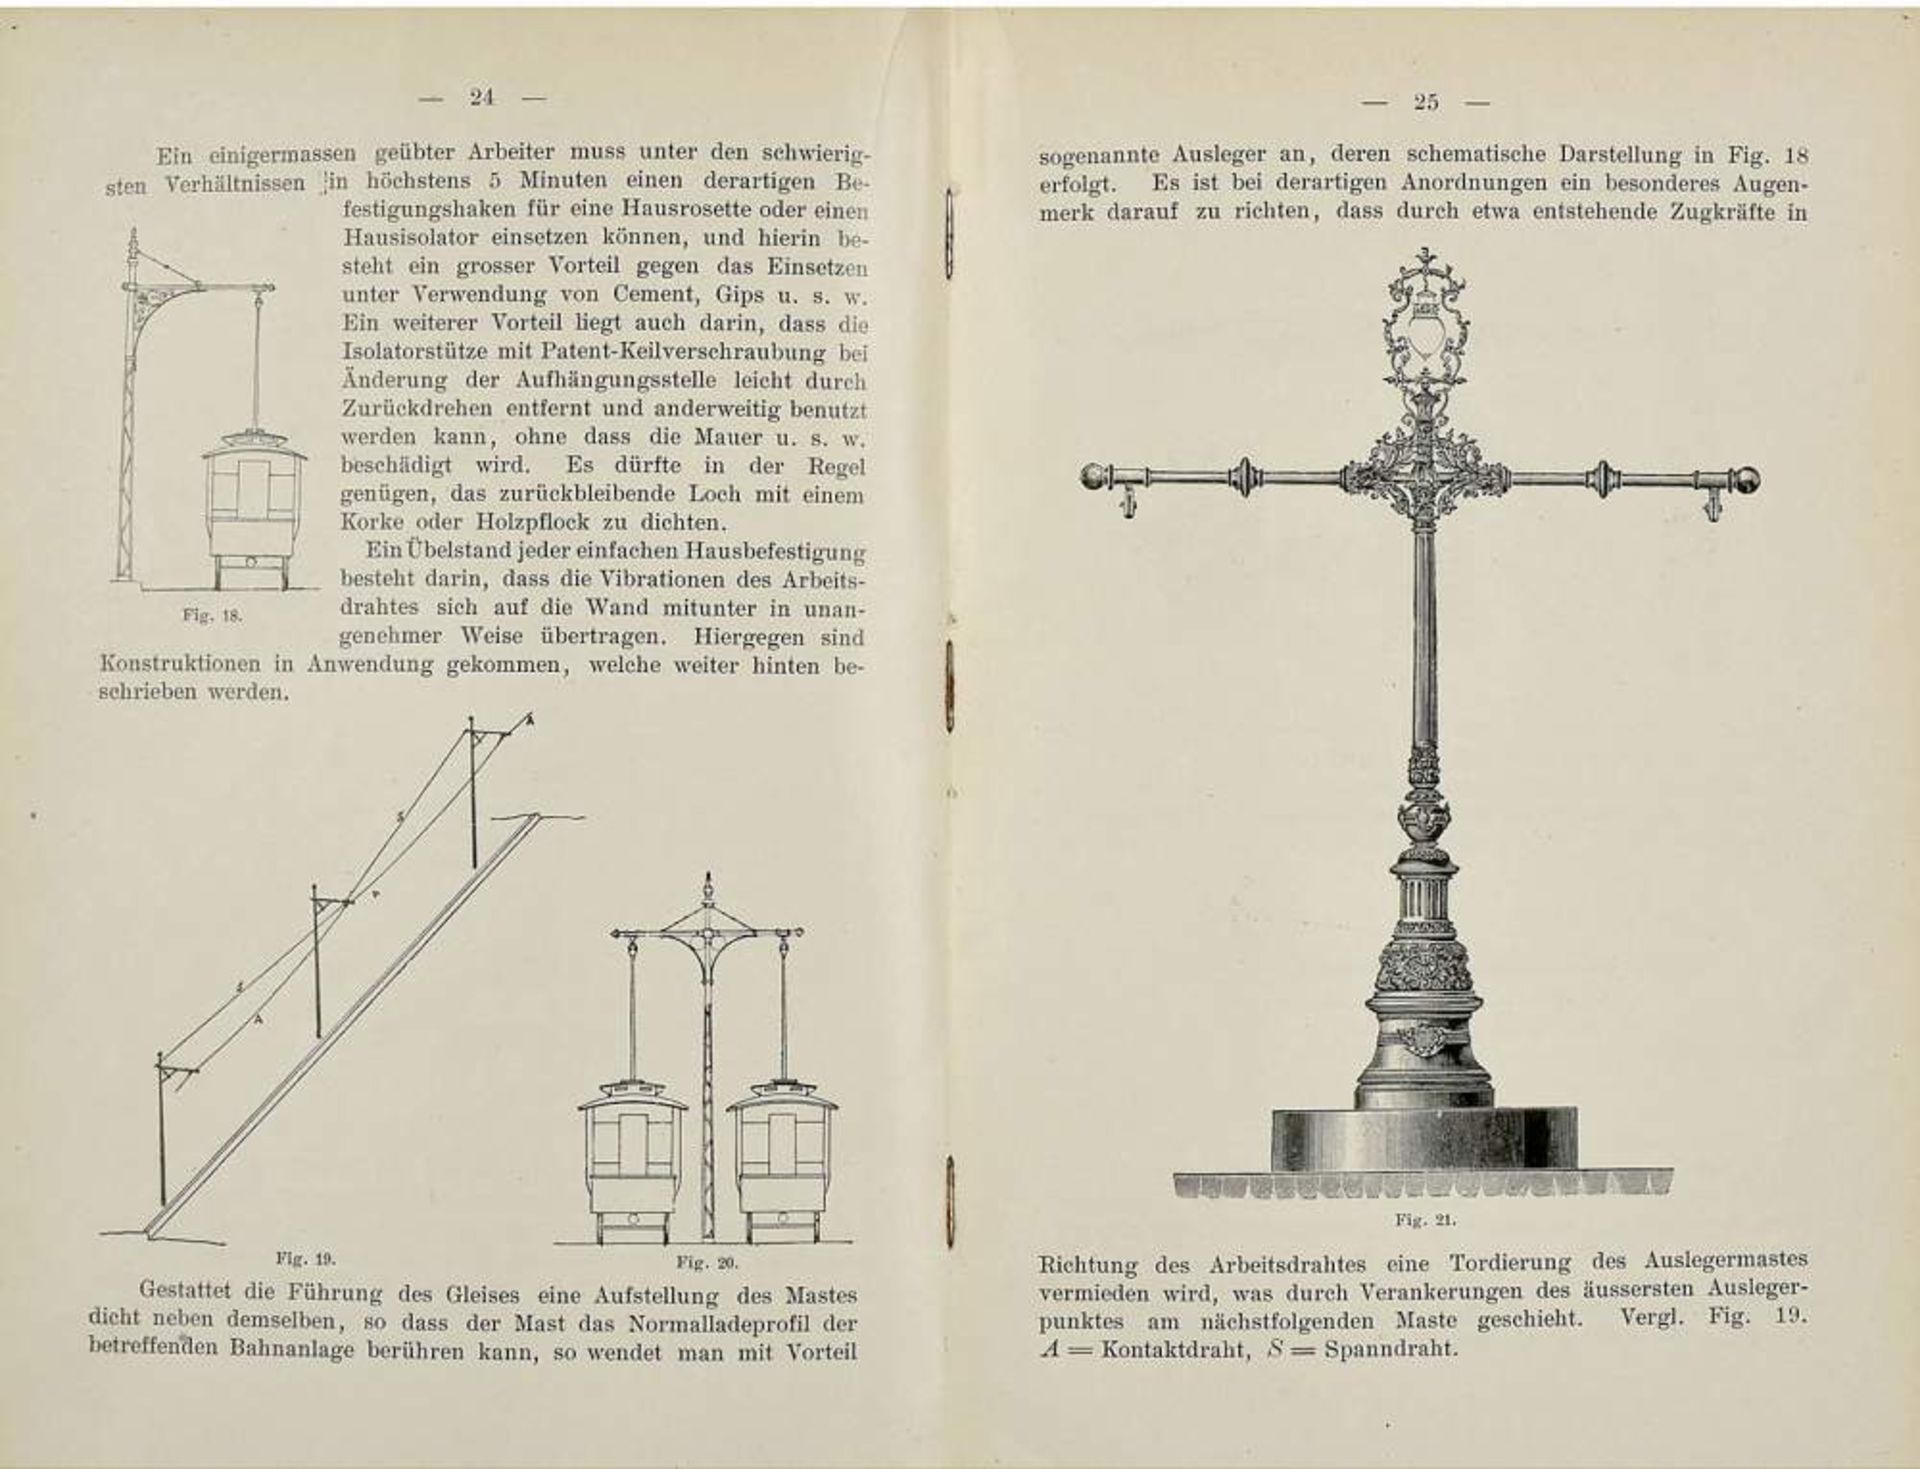 Historical Books about Railways and Trams
1) "Organ für die Fortschritte des Eisenbahnwesens in